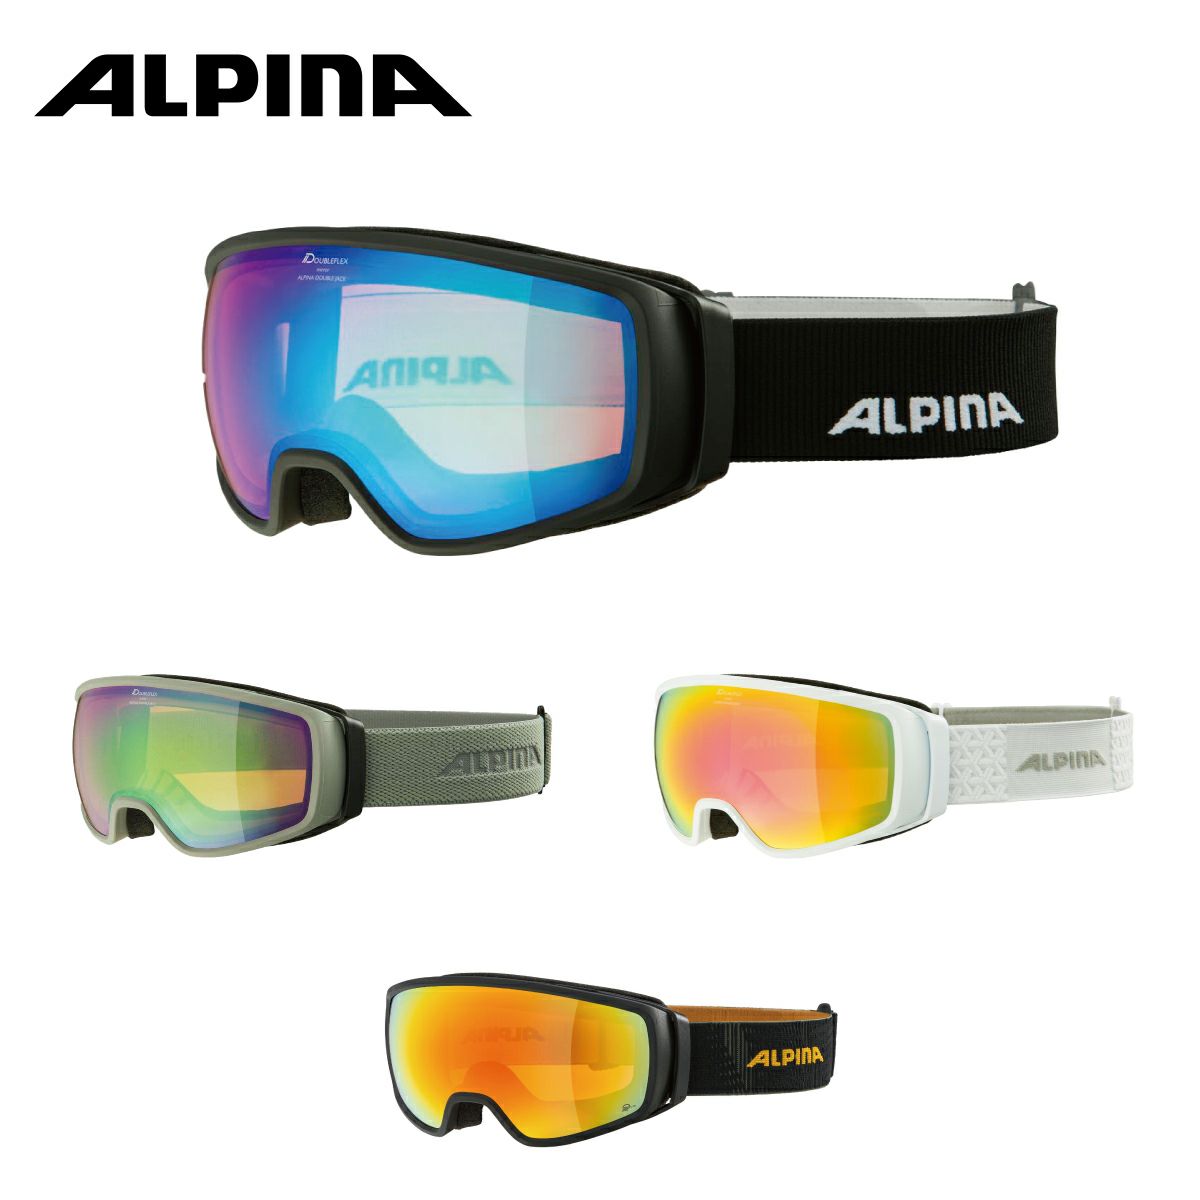 ALPINA(アルピナ) スキースノーボードゴーグル ユニセックス ハイコンミラーレンズ くもり止め メガネ使用可 DOUBLE JACK 